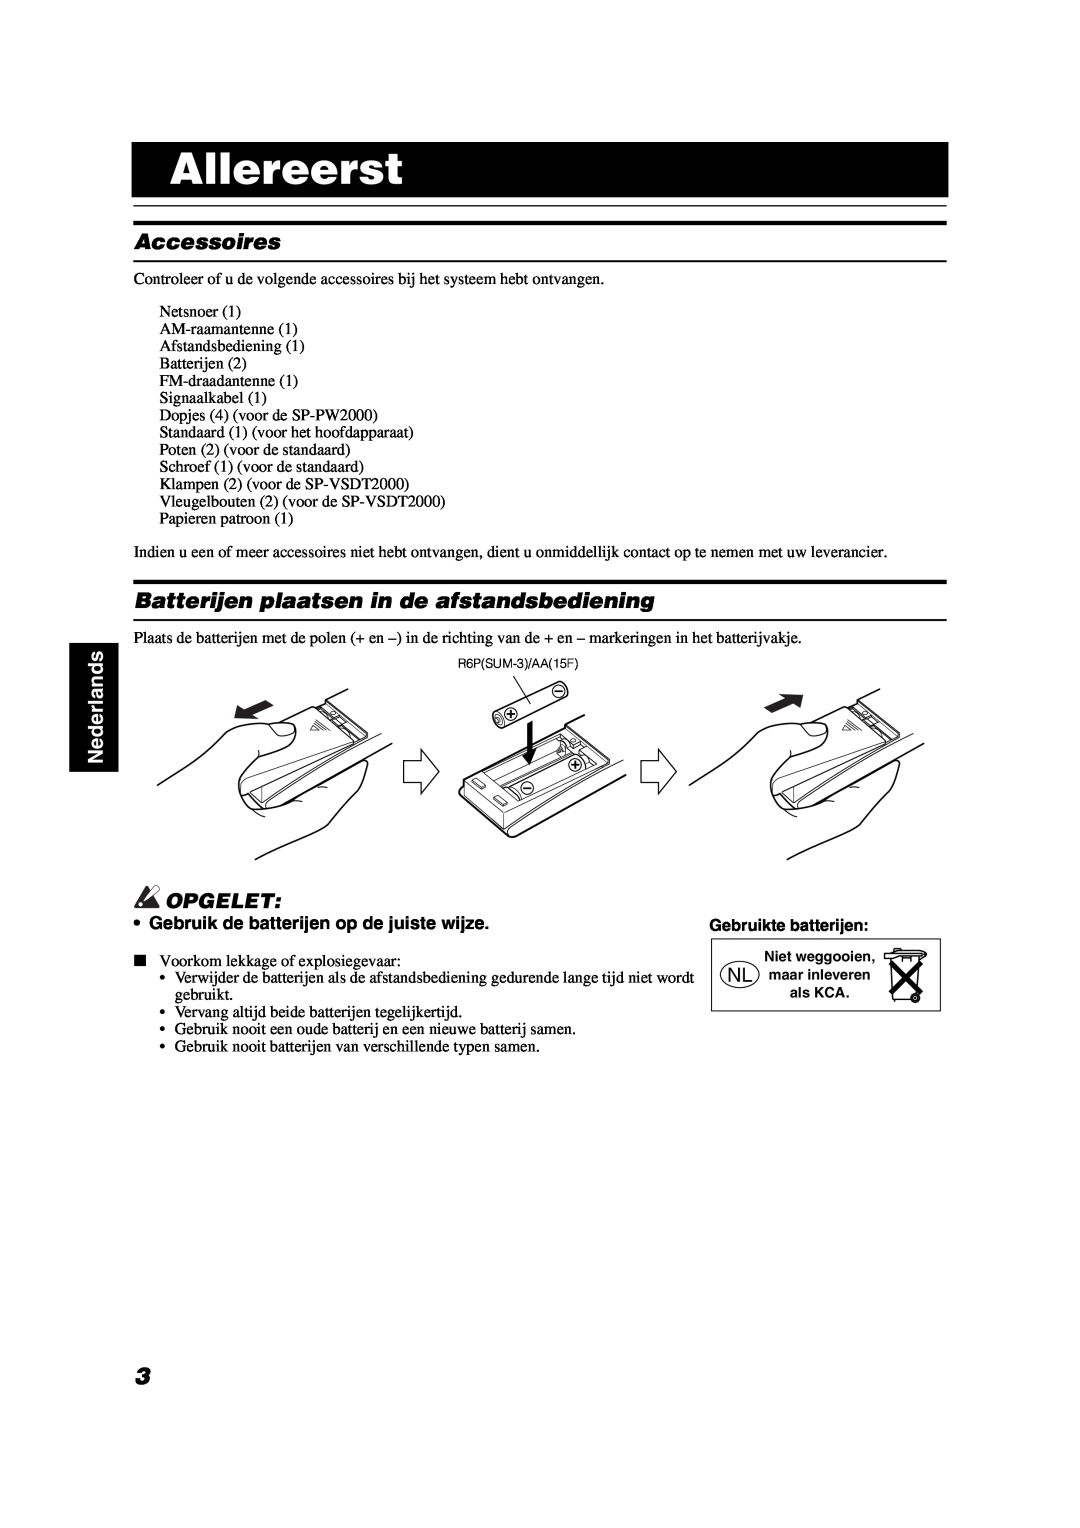 JVC VS-DT2000R manual Allereerst, Accessoires, Batterijen plaatsen in de afstandsbediening, Opgelet, Nederlands 